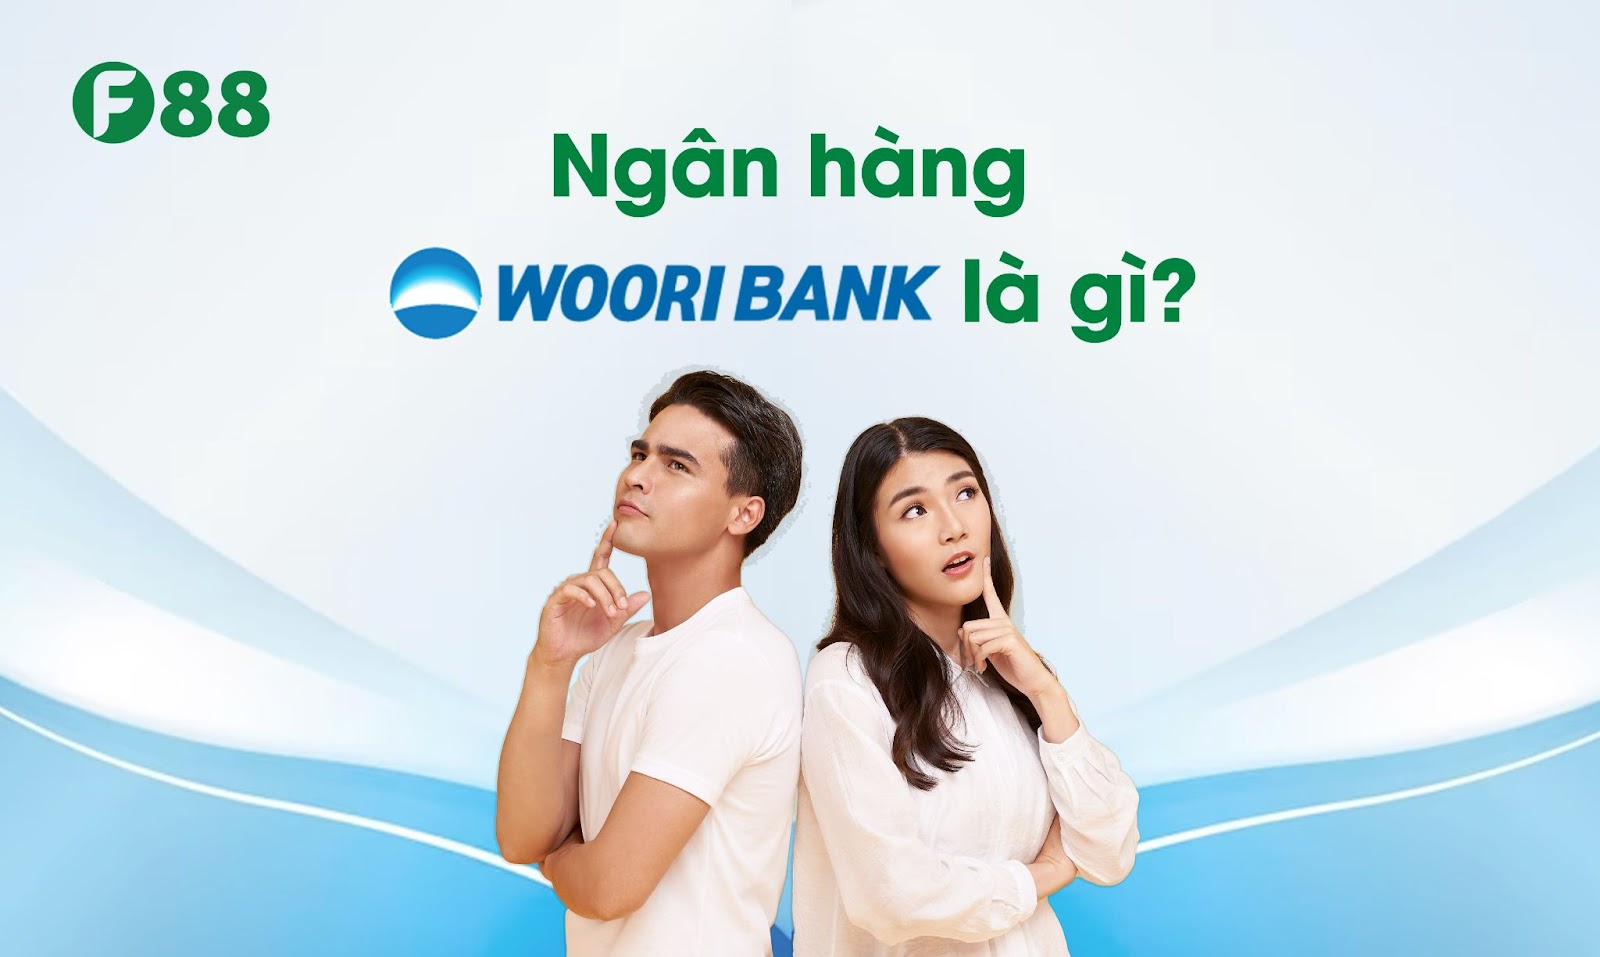 Ngân hàng Woori Bank là gì?